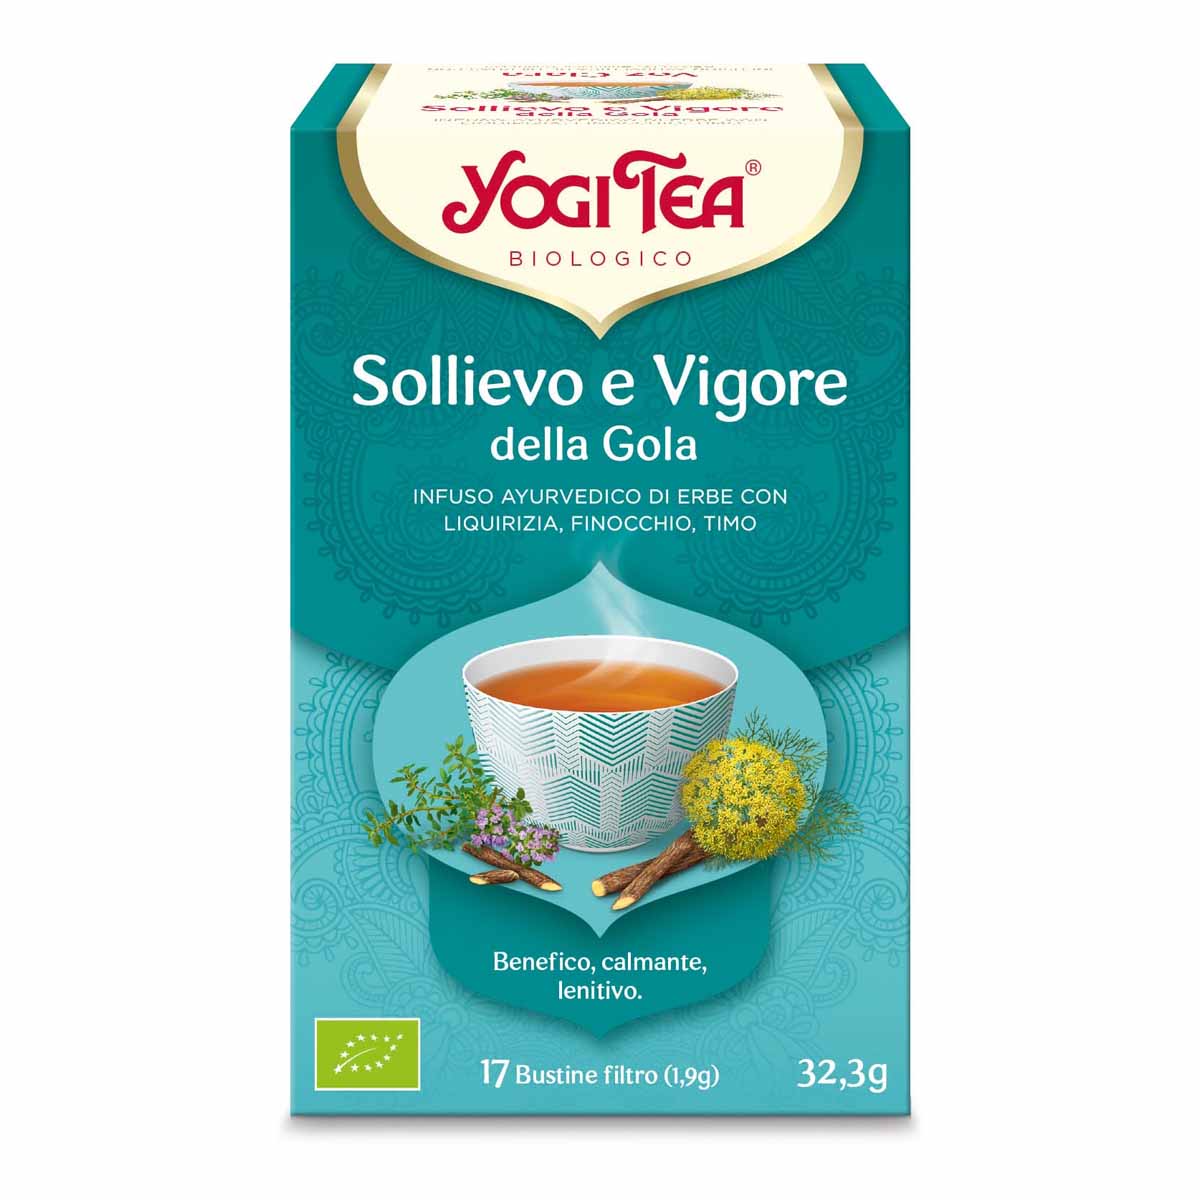 Yogi Tea – Sollievo e vigore della gola